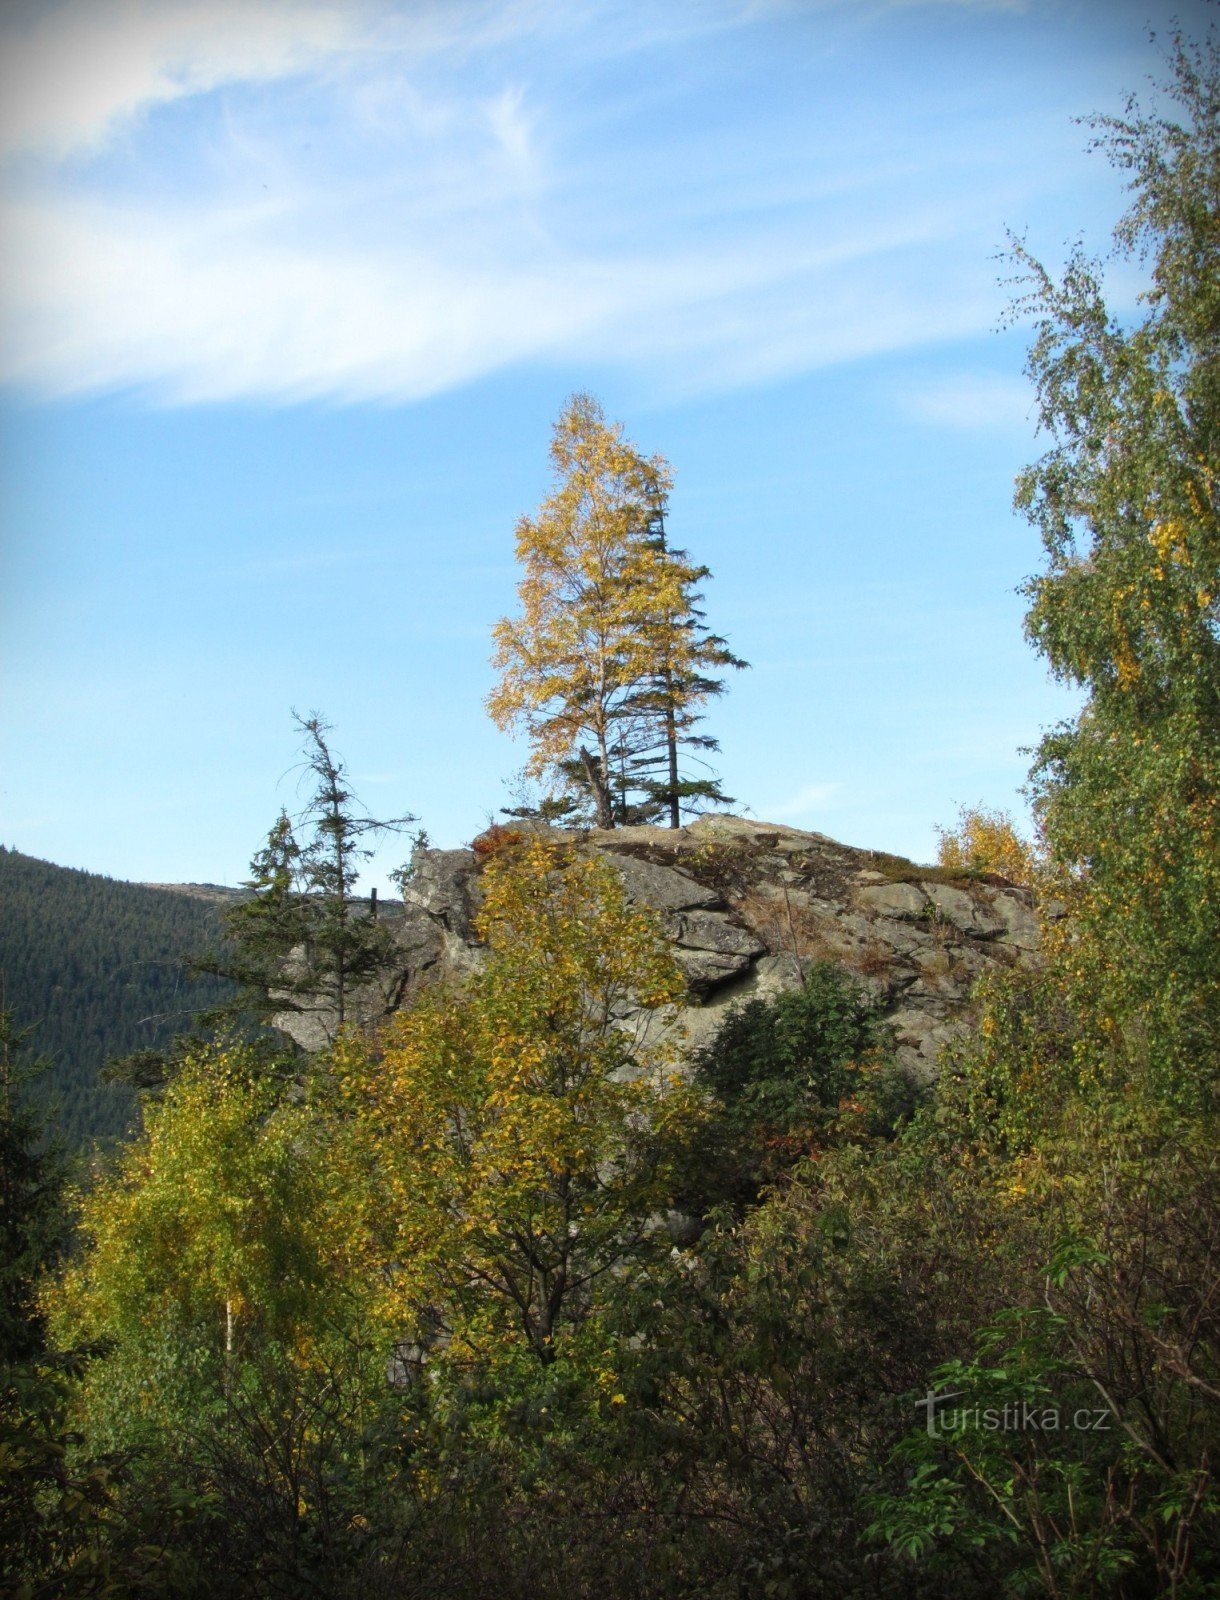 Stijena Kamzičí iznad doline Bílé potok - planine Jeseníky